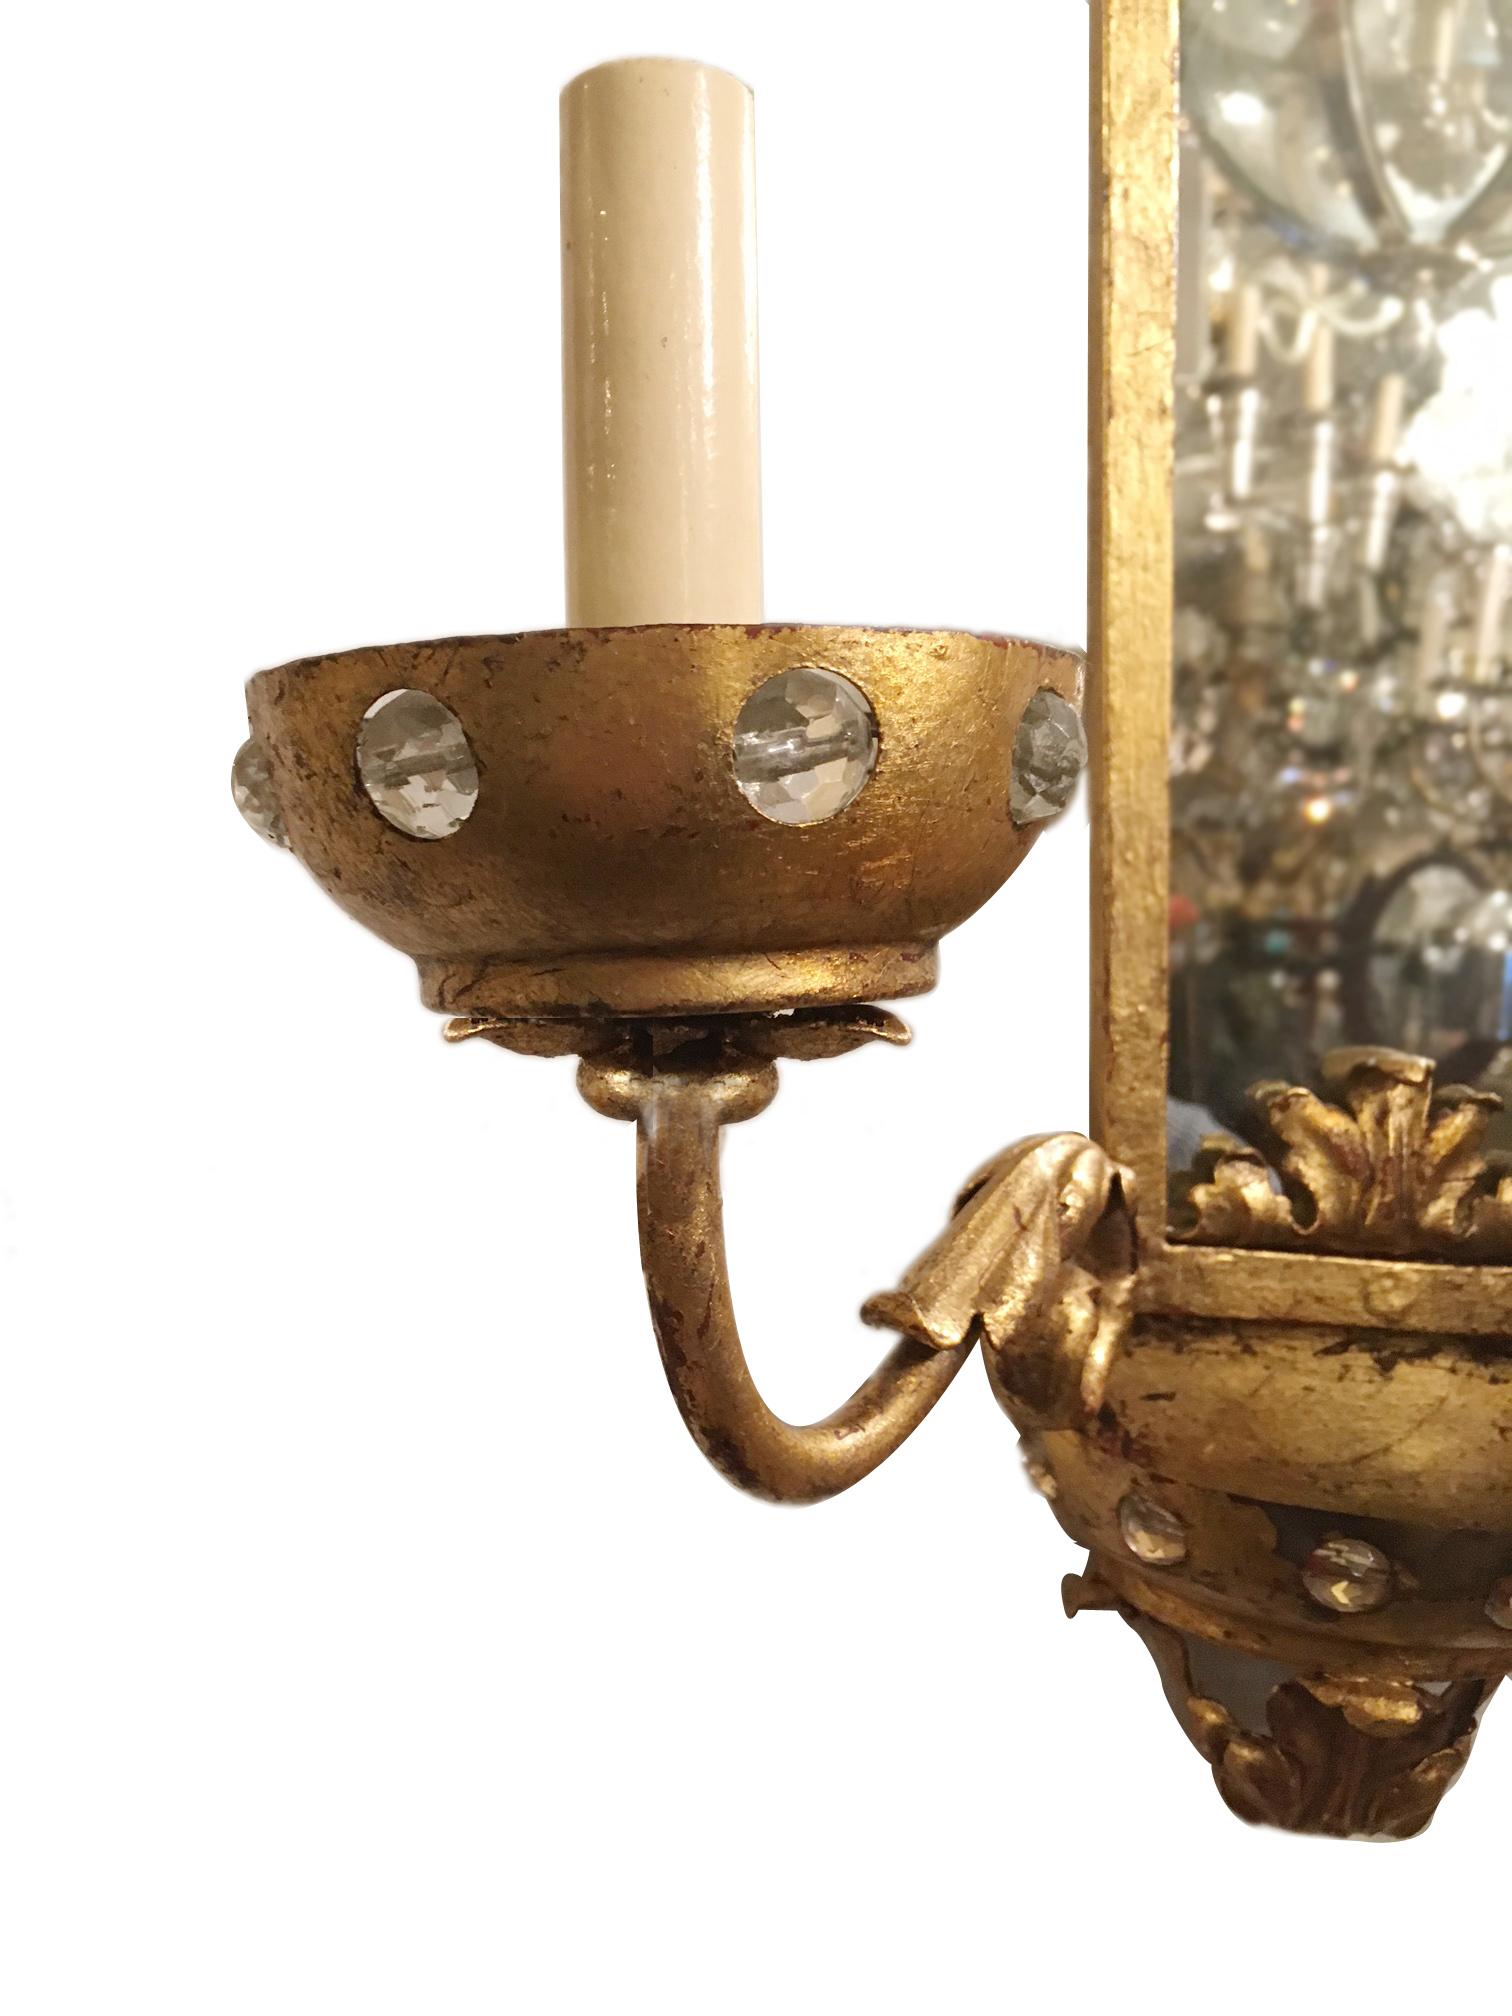 Ensemble de quatre appliques à deux bras en métal doré datant des années 1920, avec des plaques de fond en miroir et des bobeches en cristal. Vendu par paire.

Mesures
Hauteur : 17" 
Largeur : 14.5